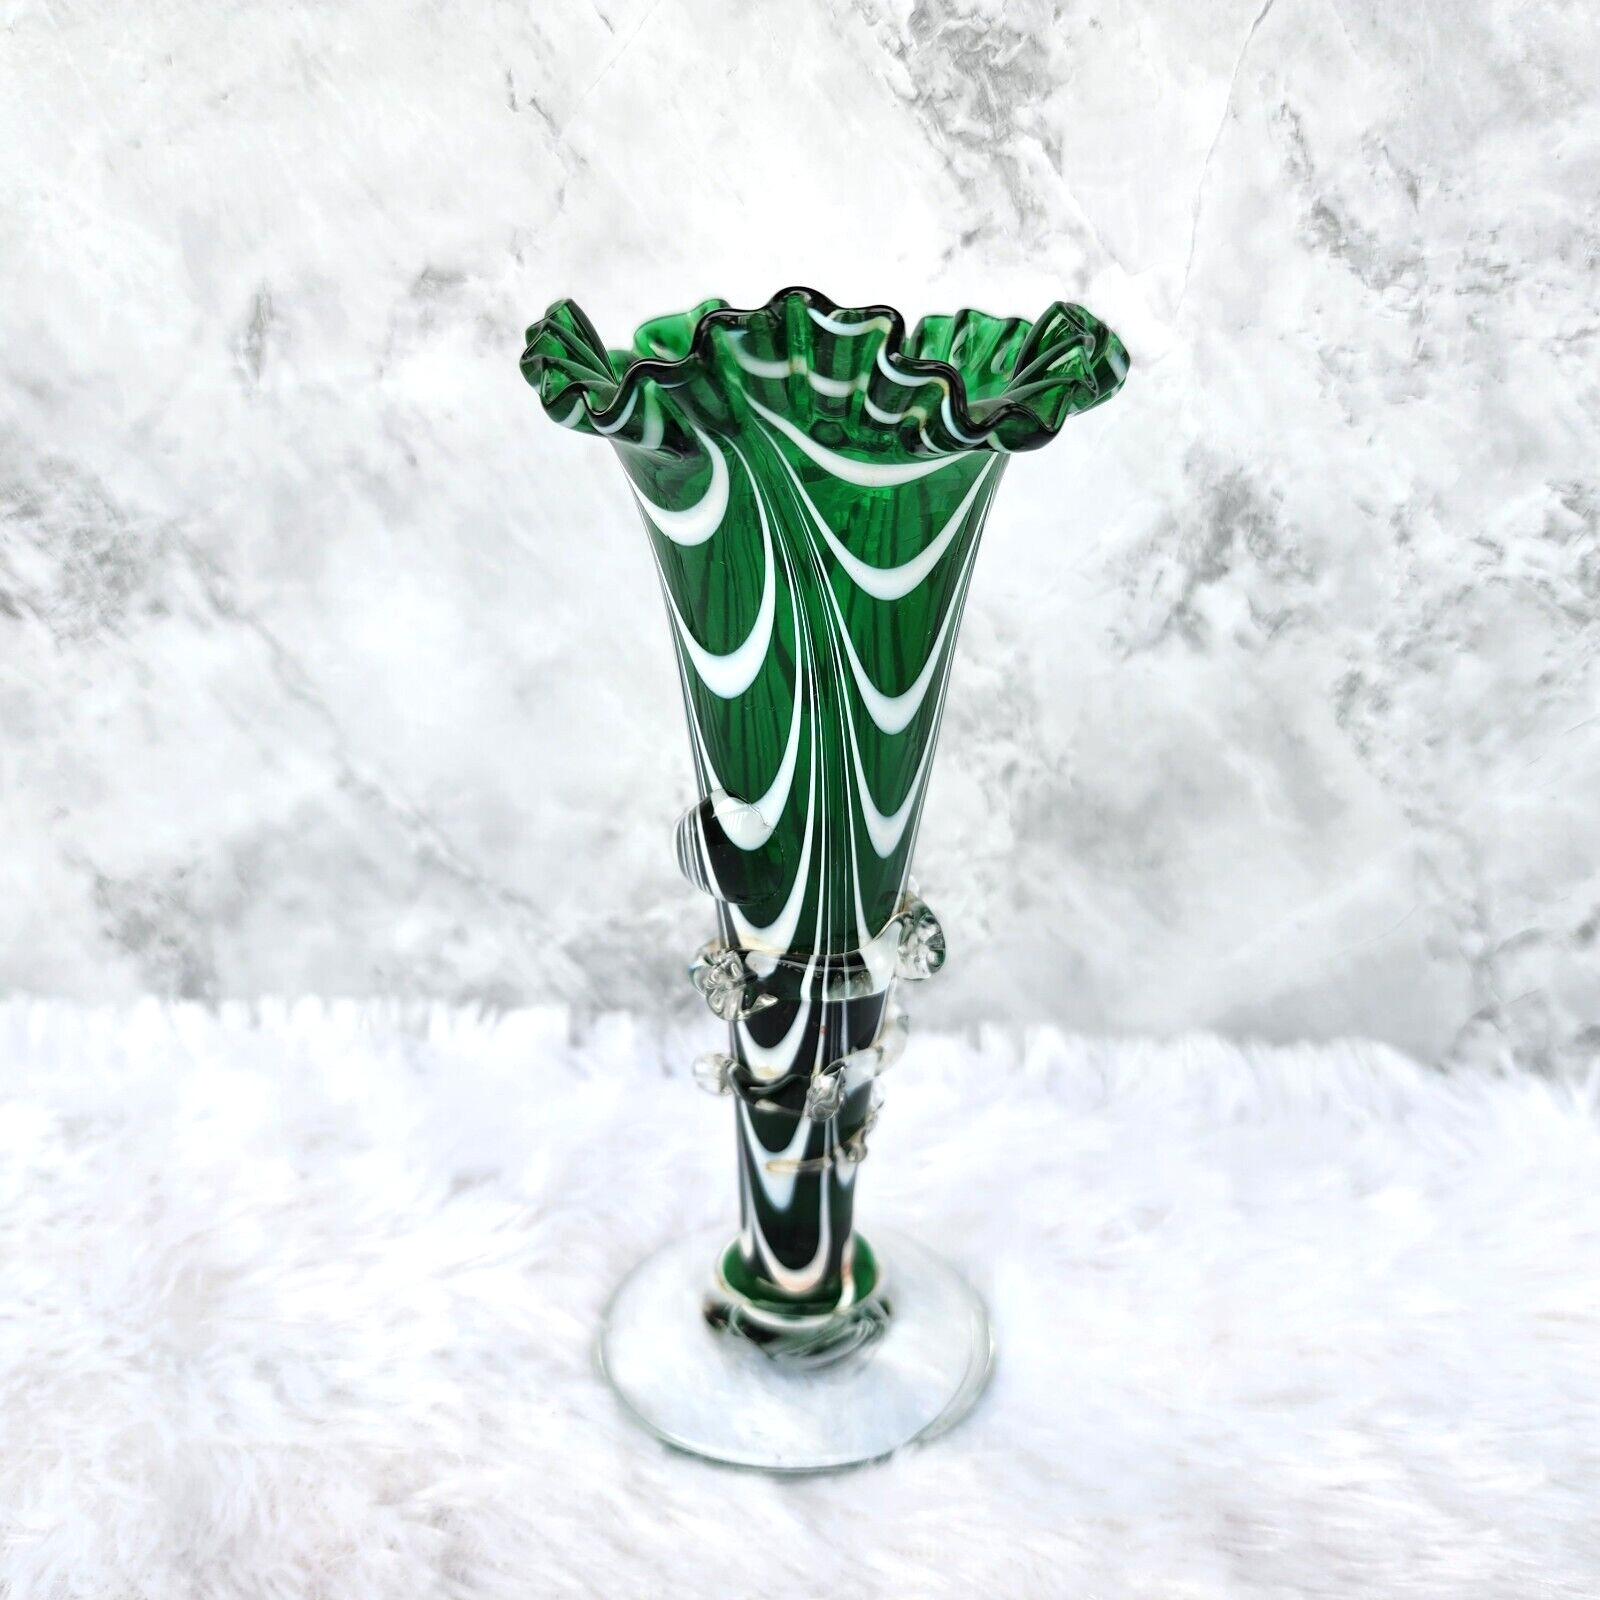 Vintage Handmade Green & White Swirl Pattern Glass Flower Vase Pontil Mark GV153